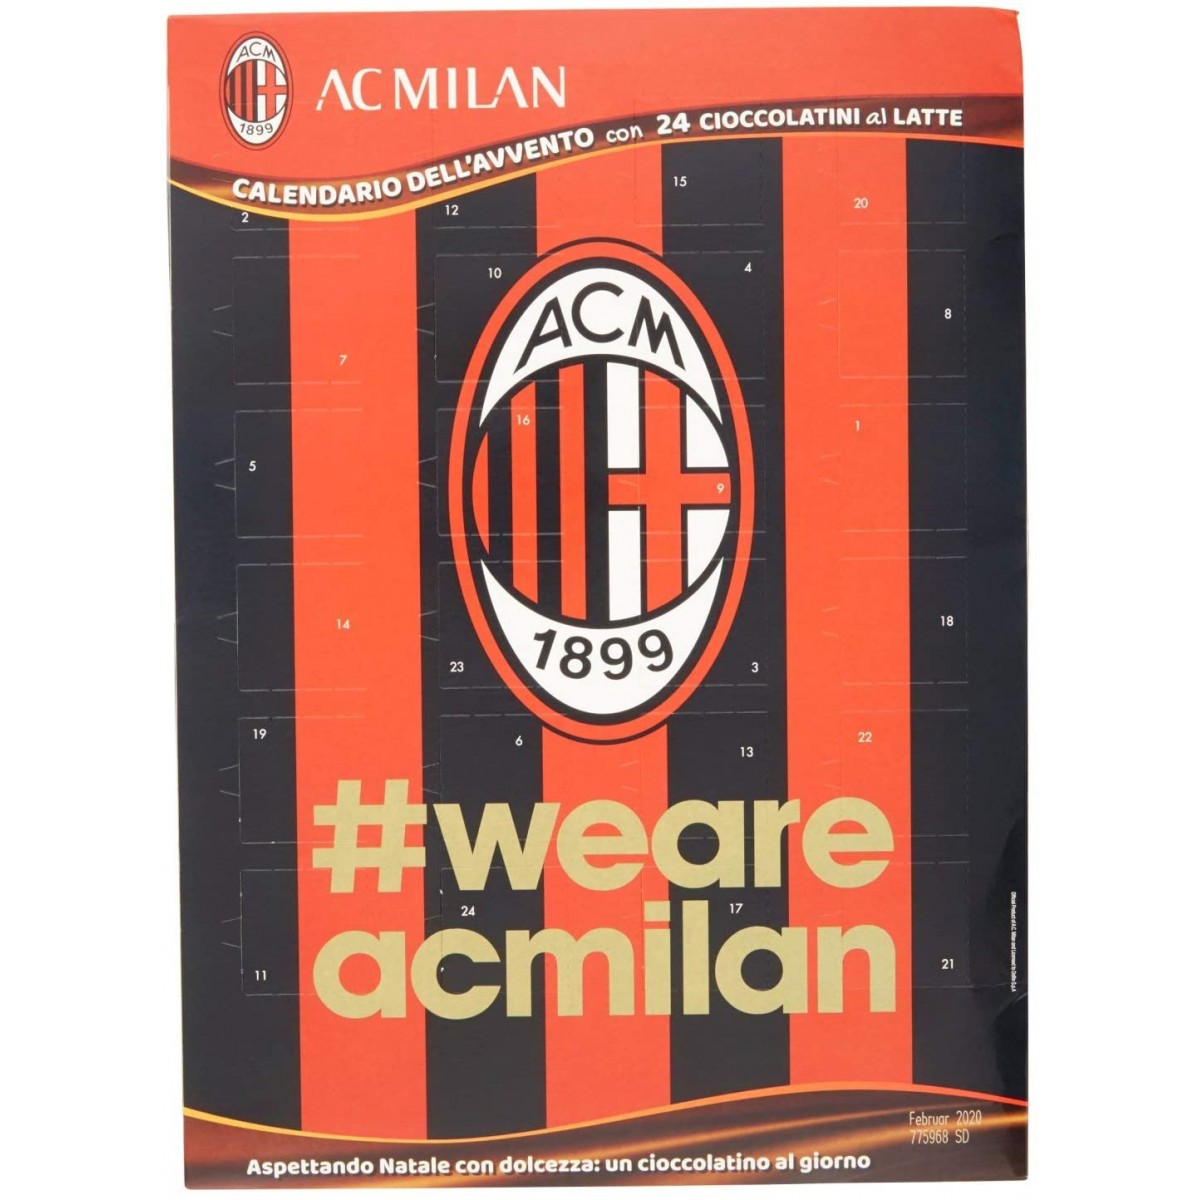 Calendario dell'avvento A.C Milan da 75 g, con 24 cioccolatini al latte